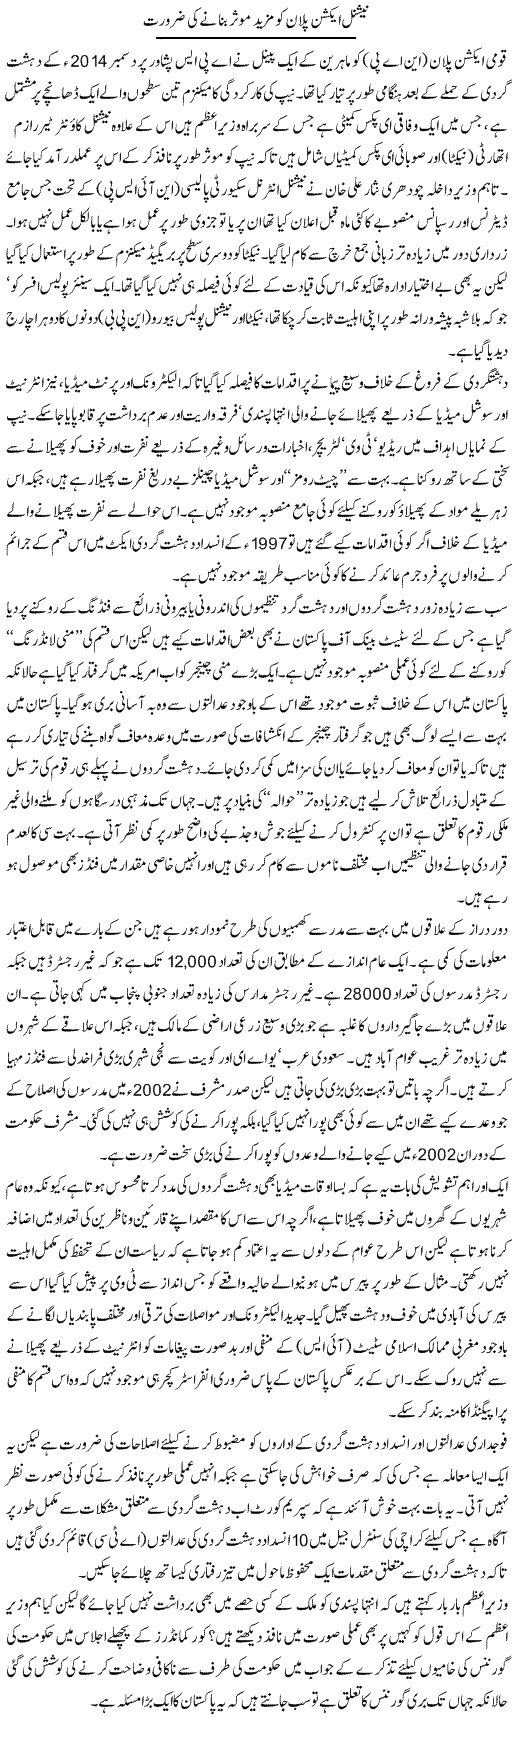 National Action Plan Ko Mazeed Muassar Banane Ki Zaroorat | Ikram Sehgal | Daily Urdu Columns